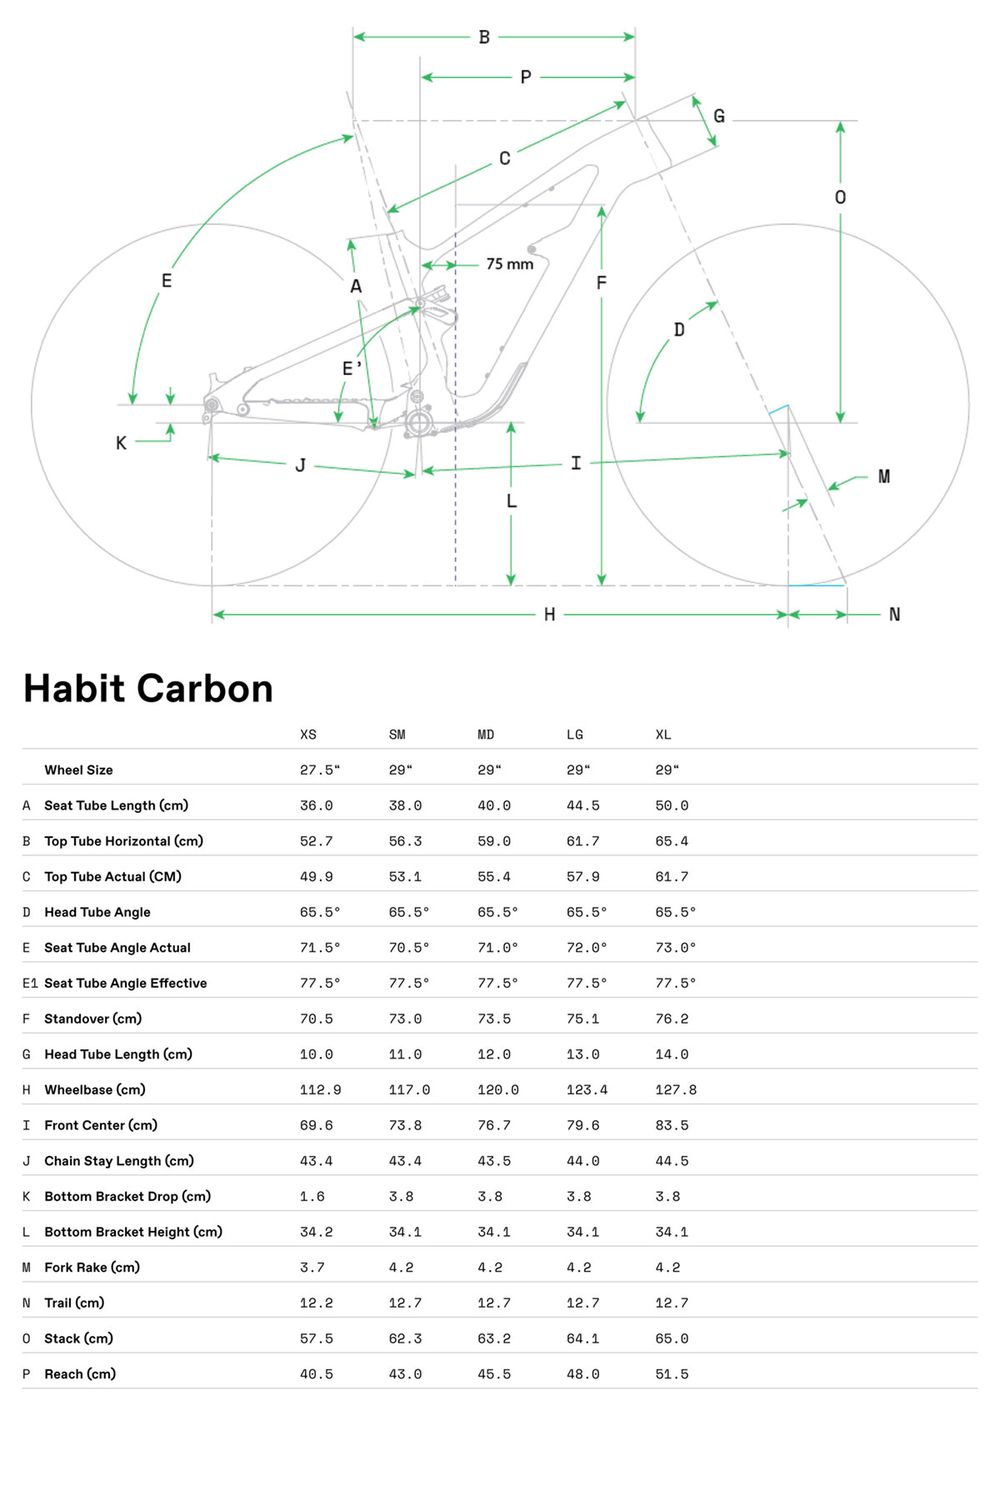 Habit Carbon 2 - 